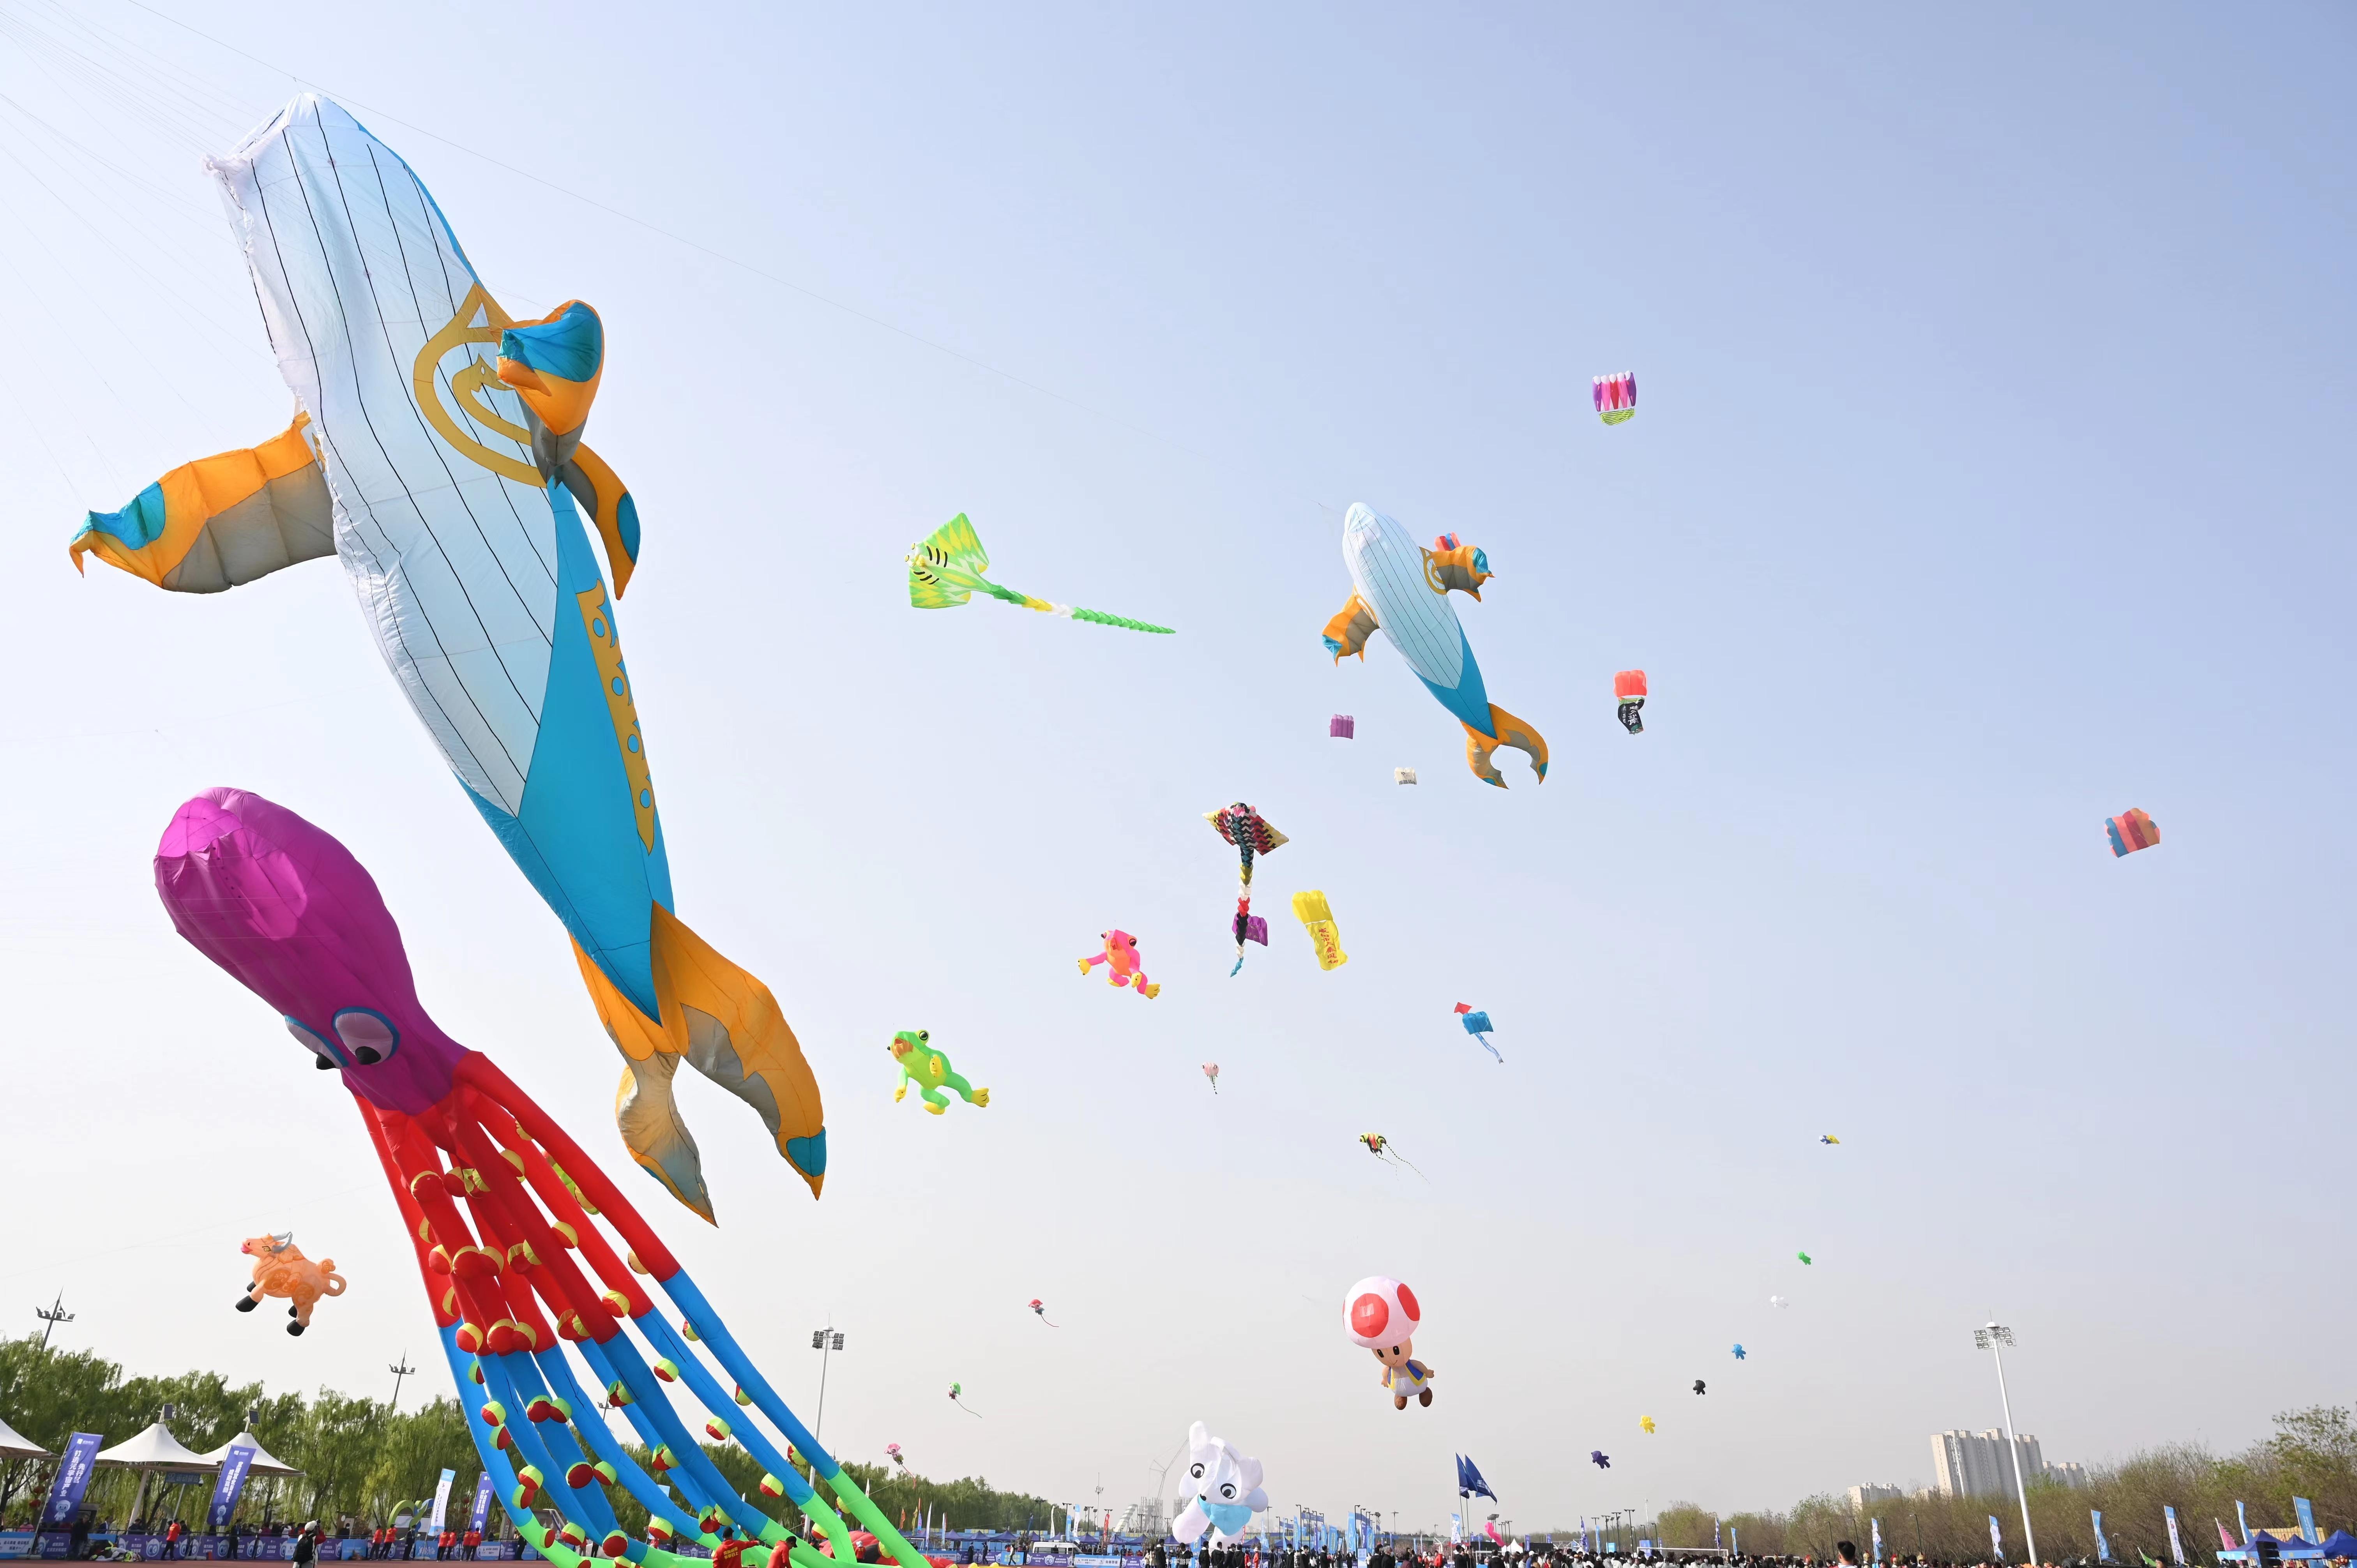 鹏羽天角风筝:翱翔天际的艺术——探索“鹏羽天角风筝”游戏攻略